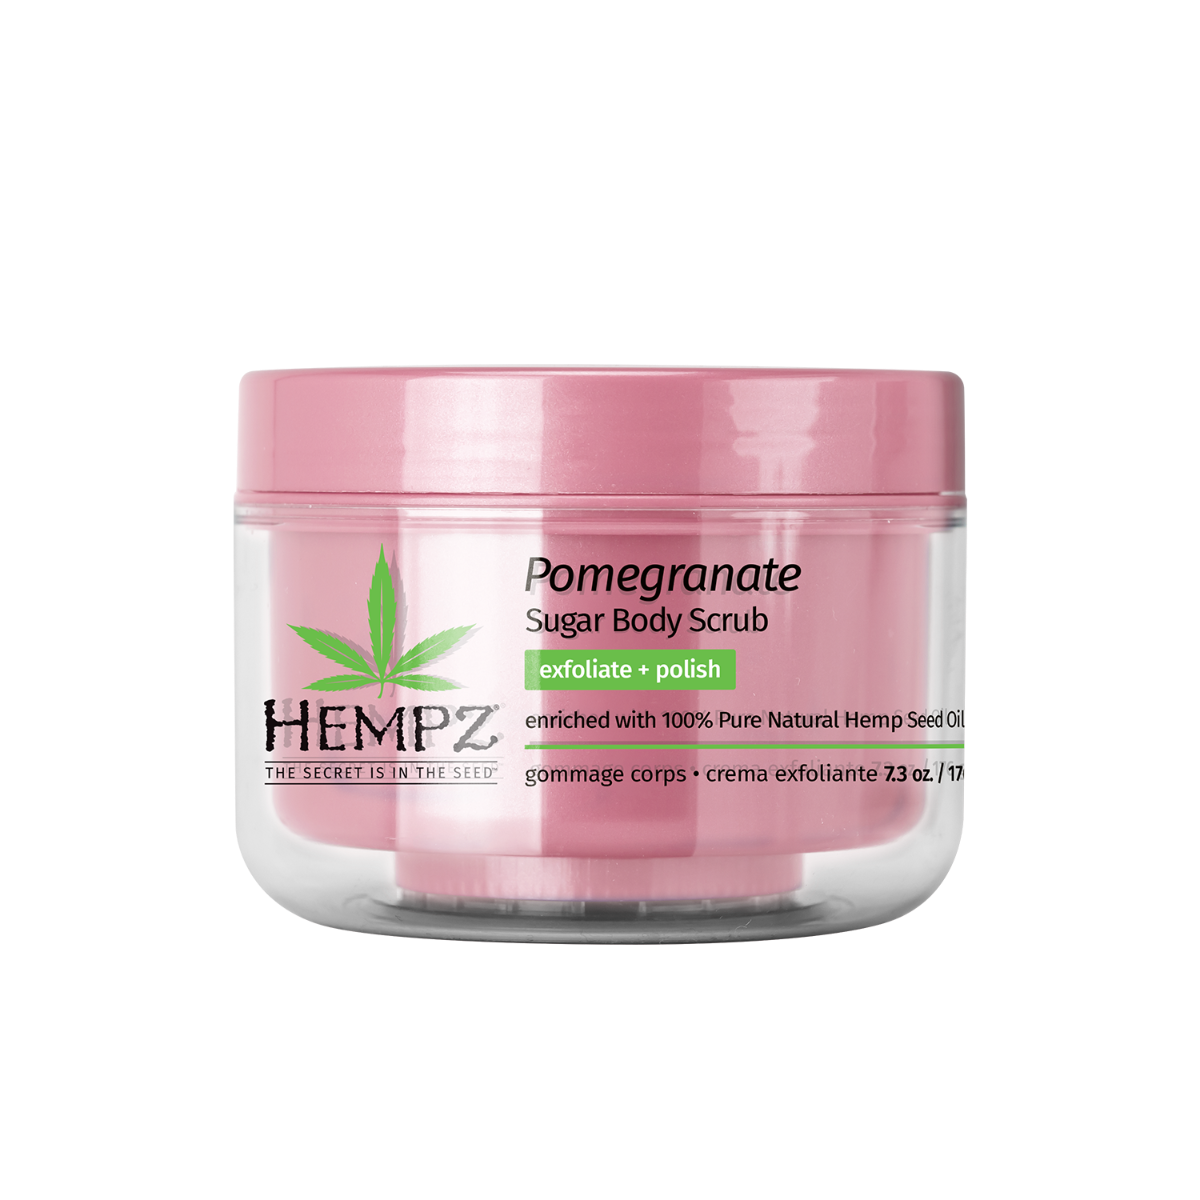 Hempz Body Scrub Sugar & Pomegranate 176g - интернет-магазин профессиональной косметики Spadream, изображение 42816